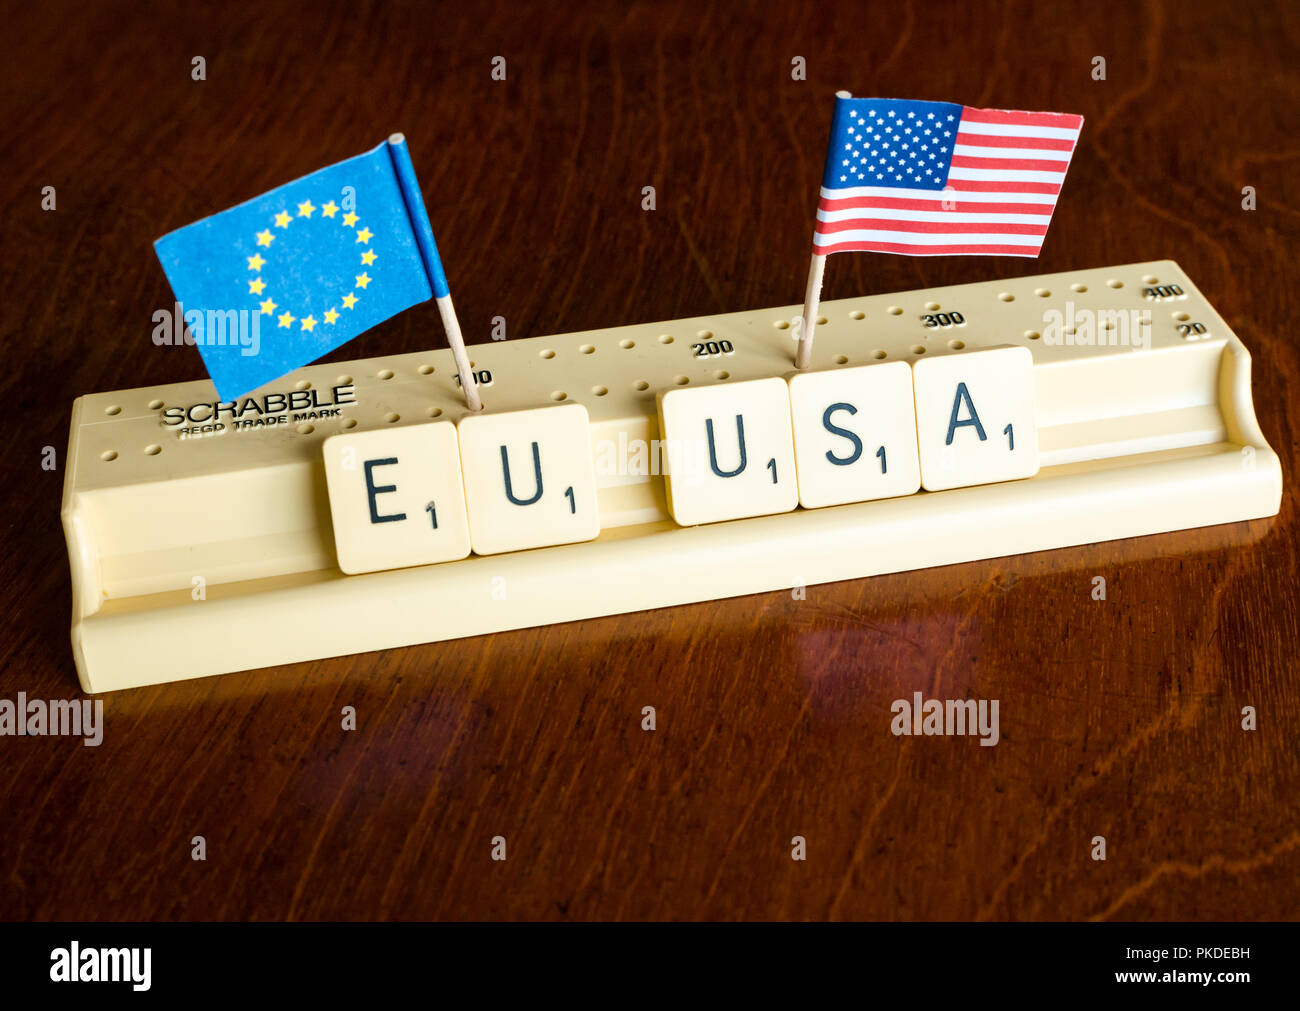 Scrabble Buchstaben Rechtschreibung EU und USA mit Amerikanischen und Europäischen Union Flaggen auf Mahagoni Hintergrund Nation, Handel und Verhandlung Konzept zu veranschaulichen Stockfoto